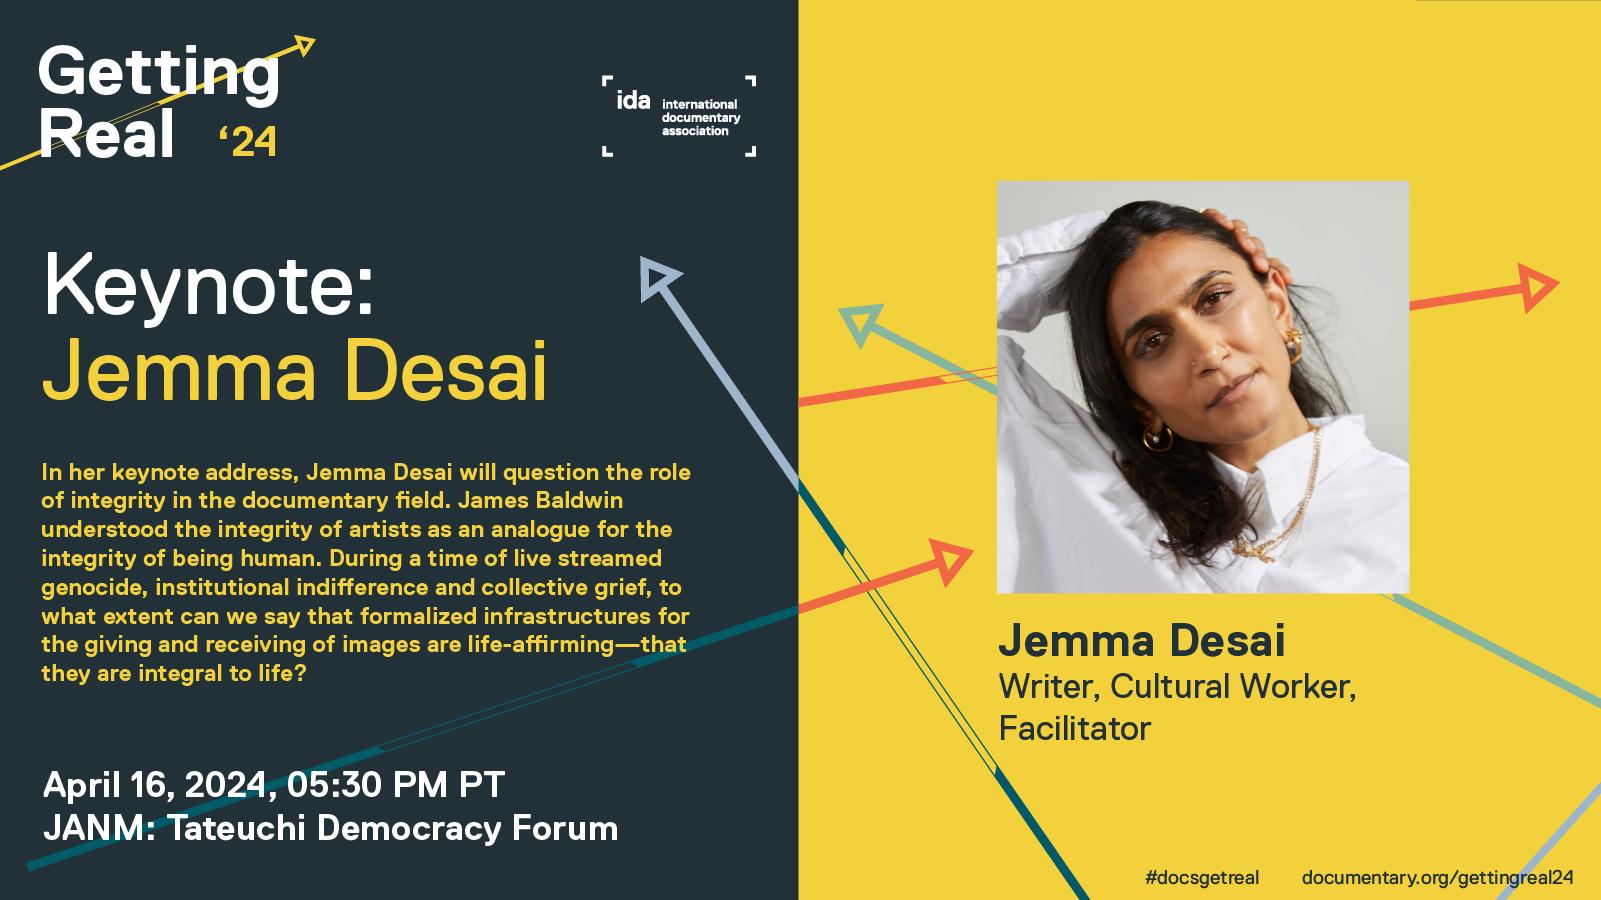 5:30PM Keynote: Jemma Desai